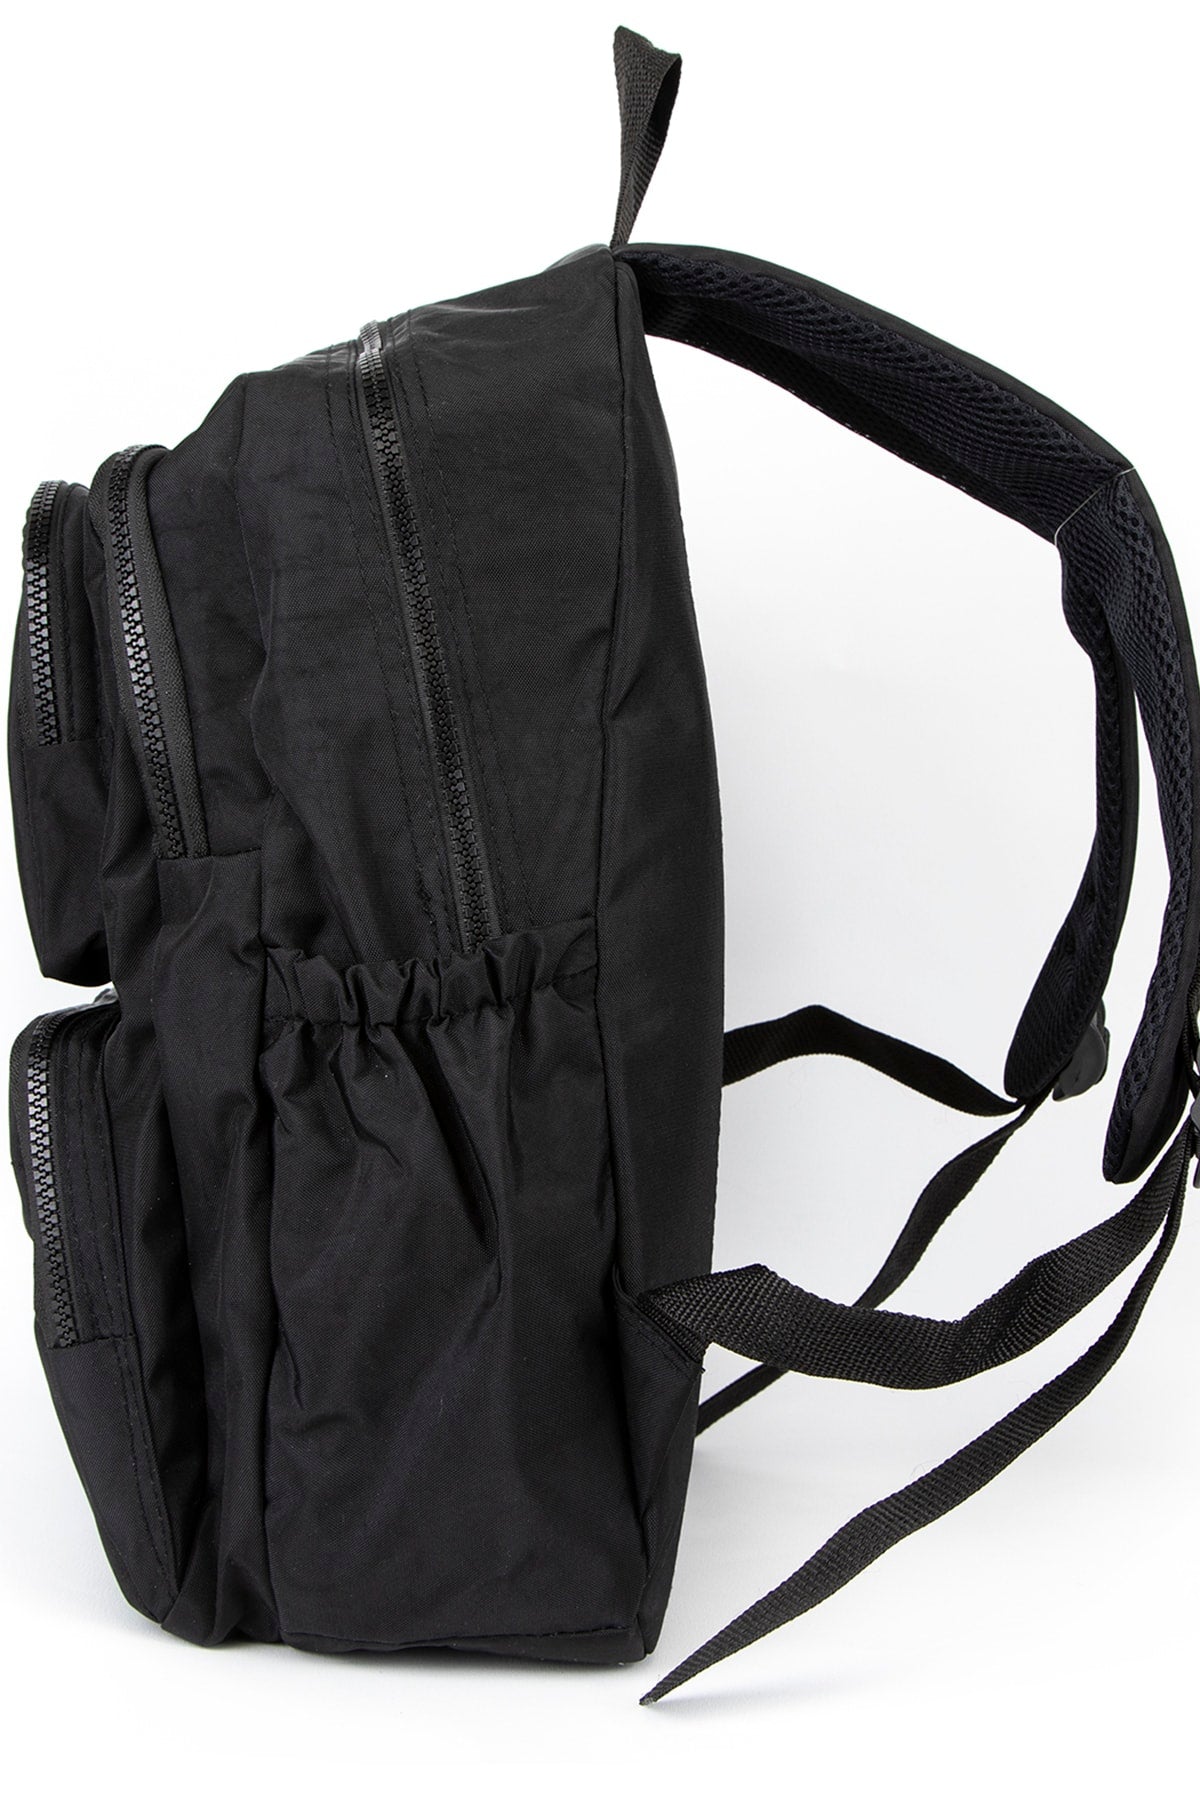 Fcstore Crinkle Fabric Waterproof Medium Size Black Clinker Backpack/laptop School Bag